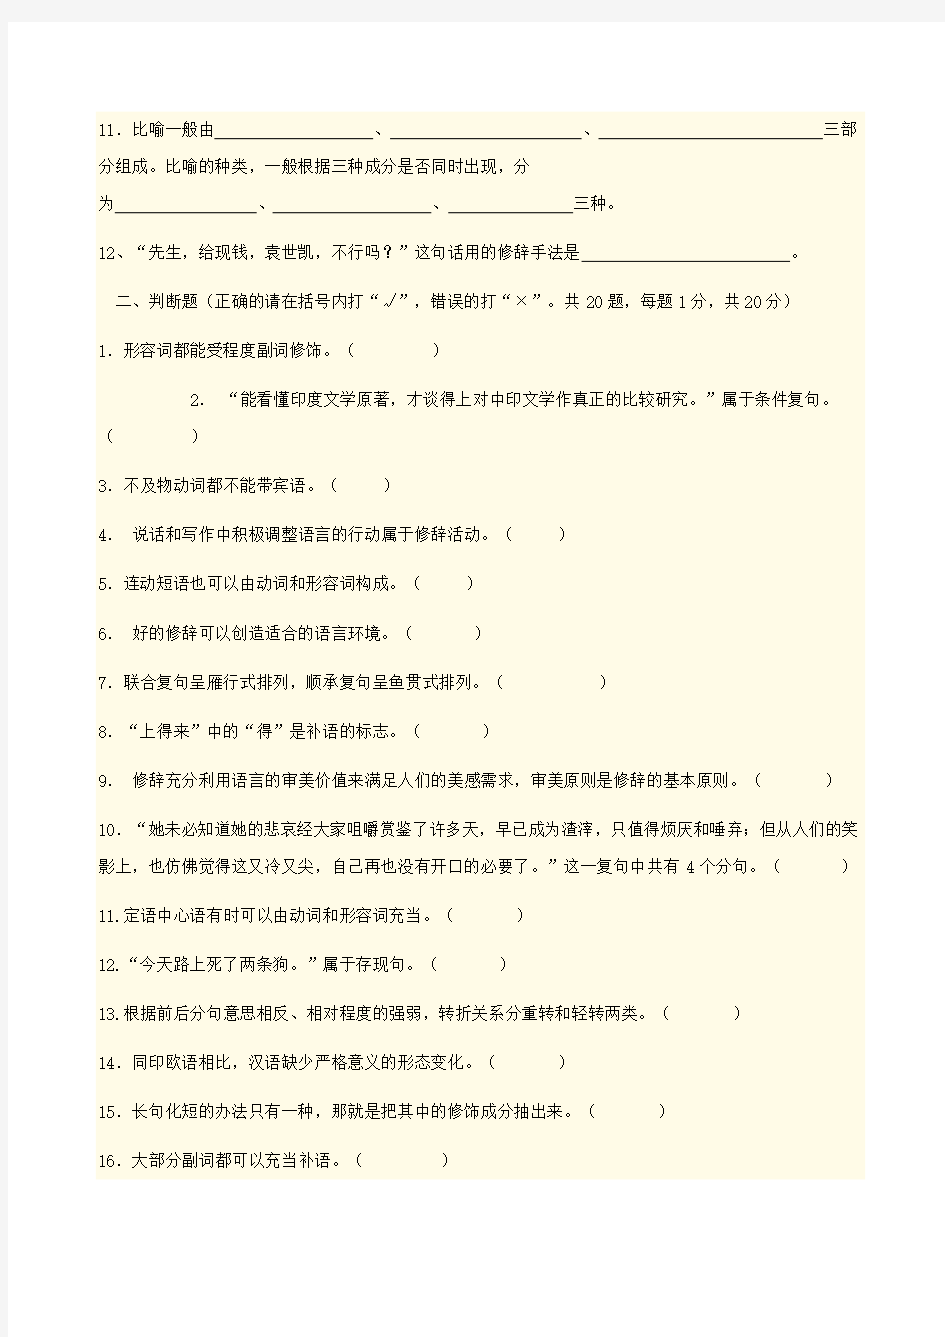 现代汉语答案及试卷剖析-共15页